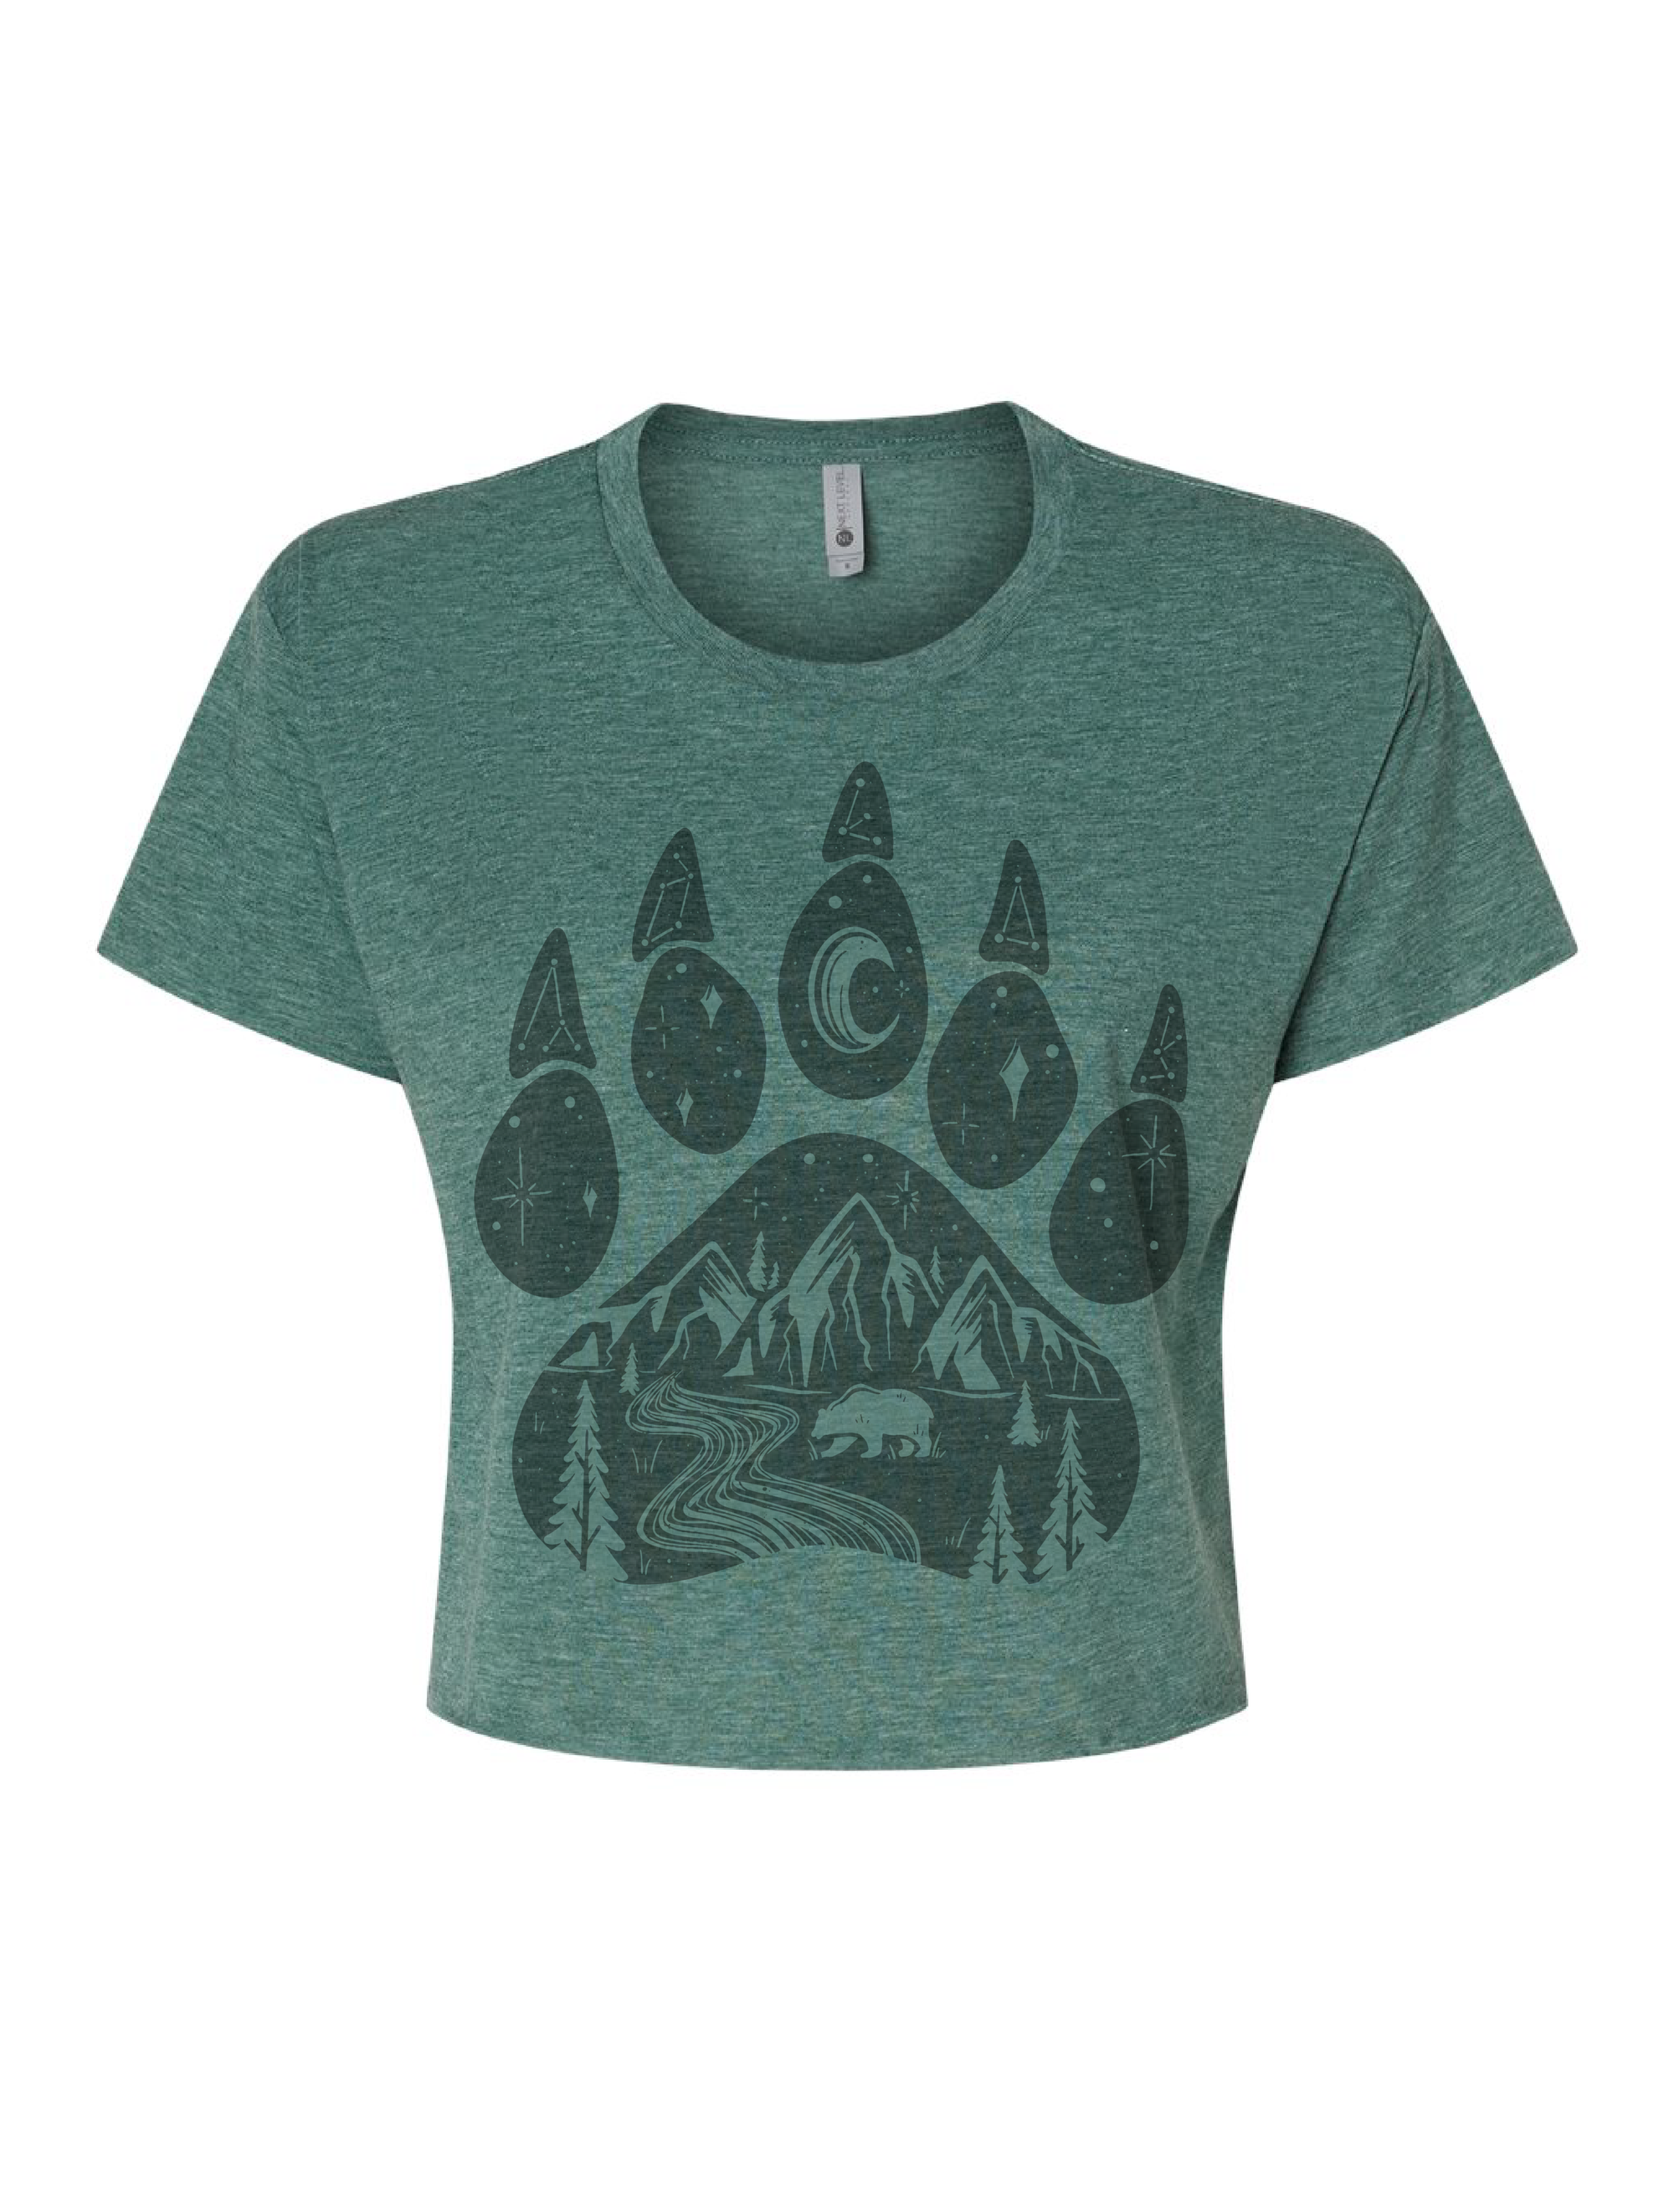 Bear Paw · Tonal · Cropped T-Shirt